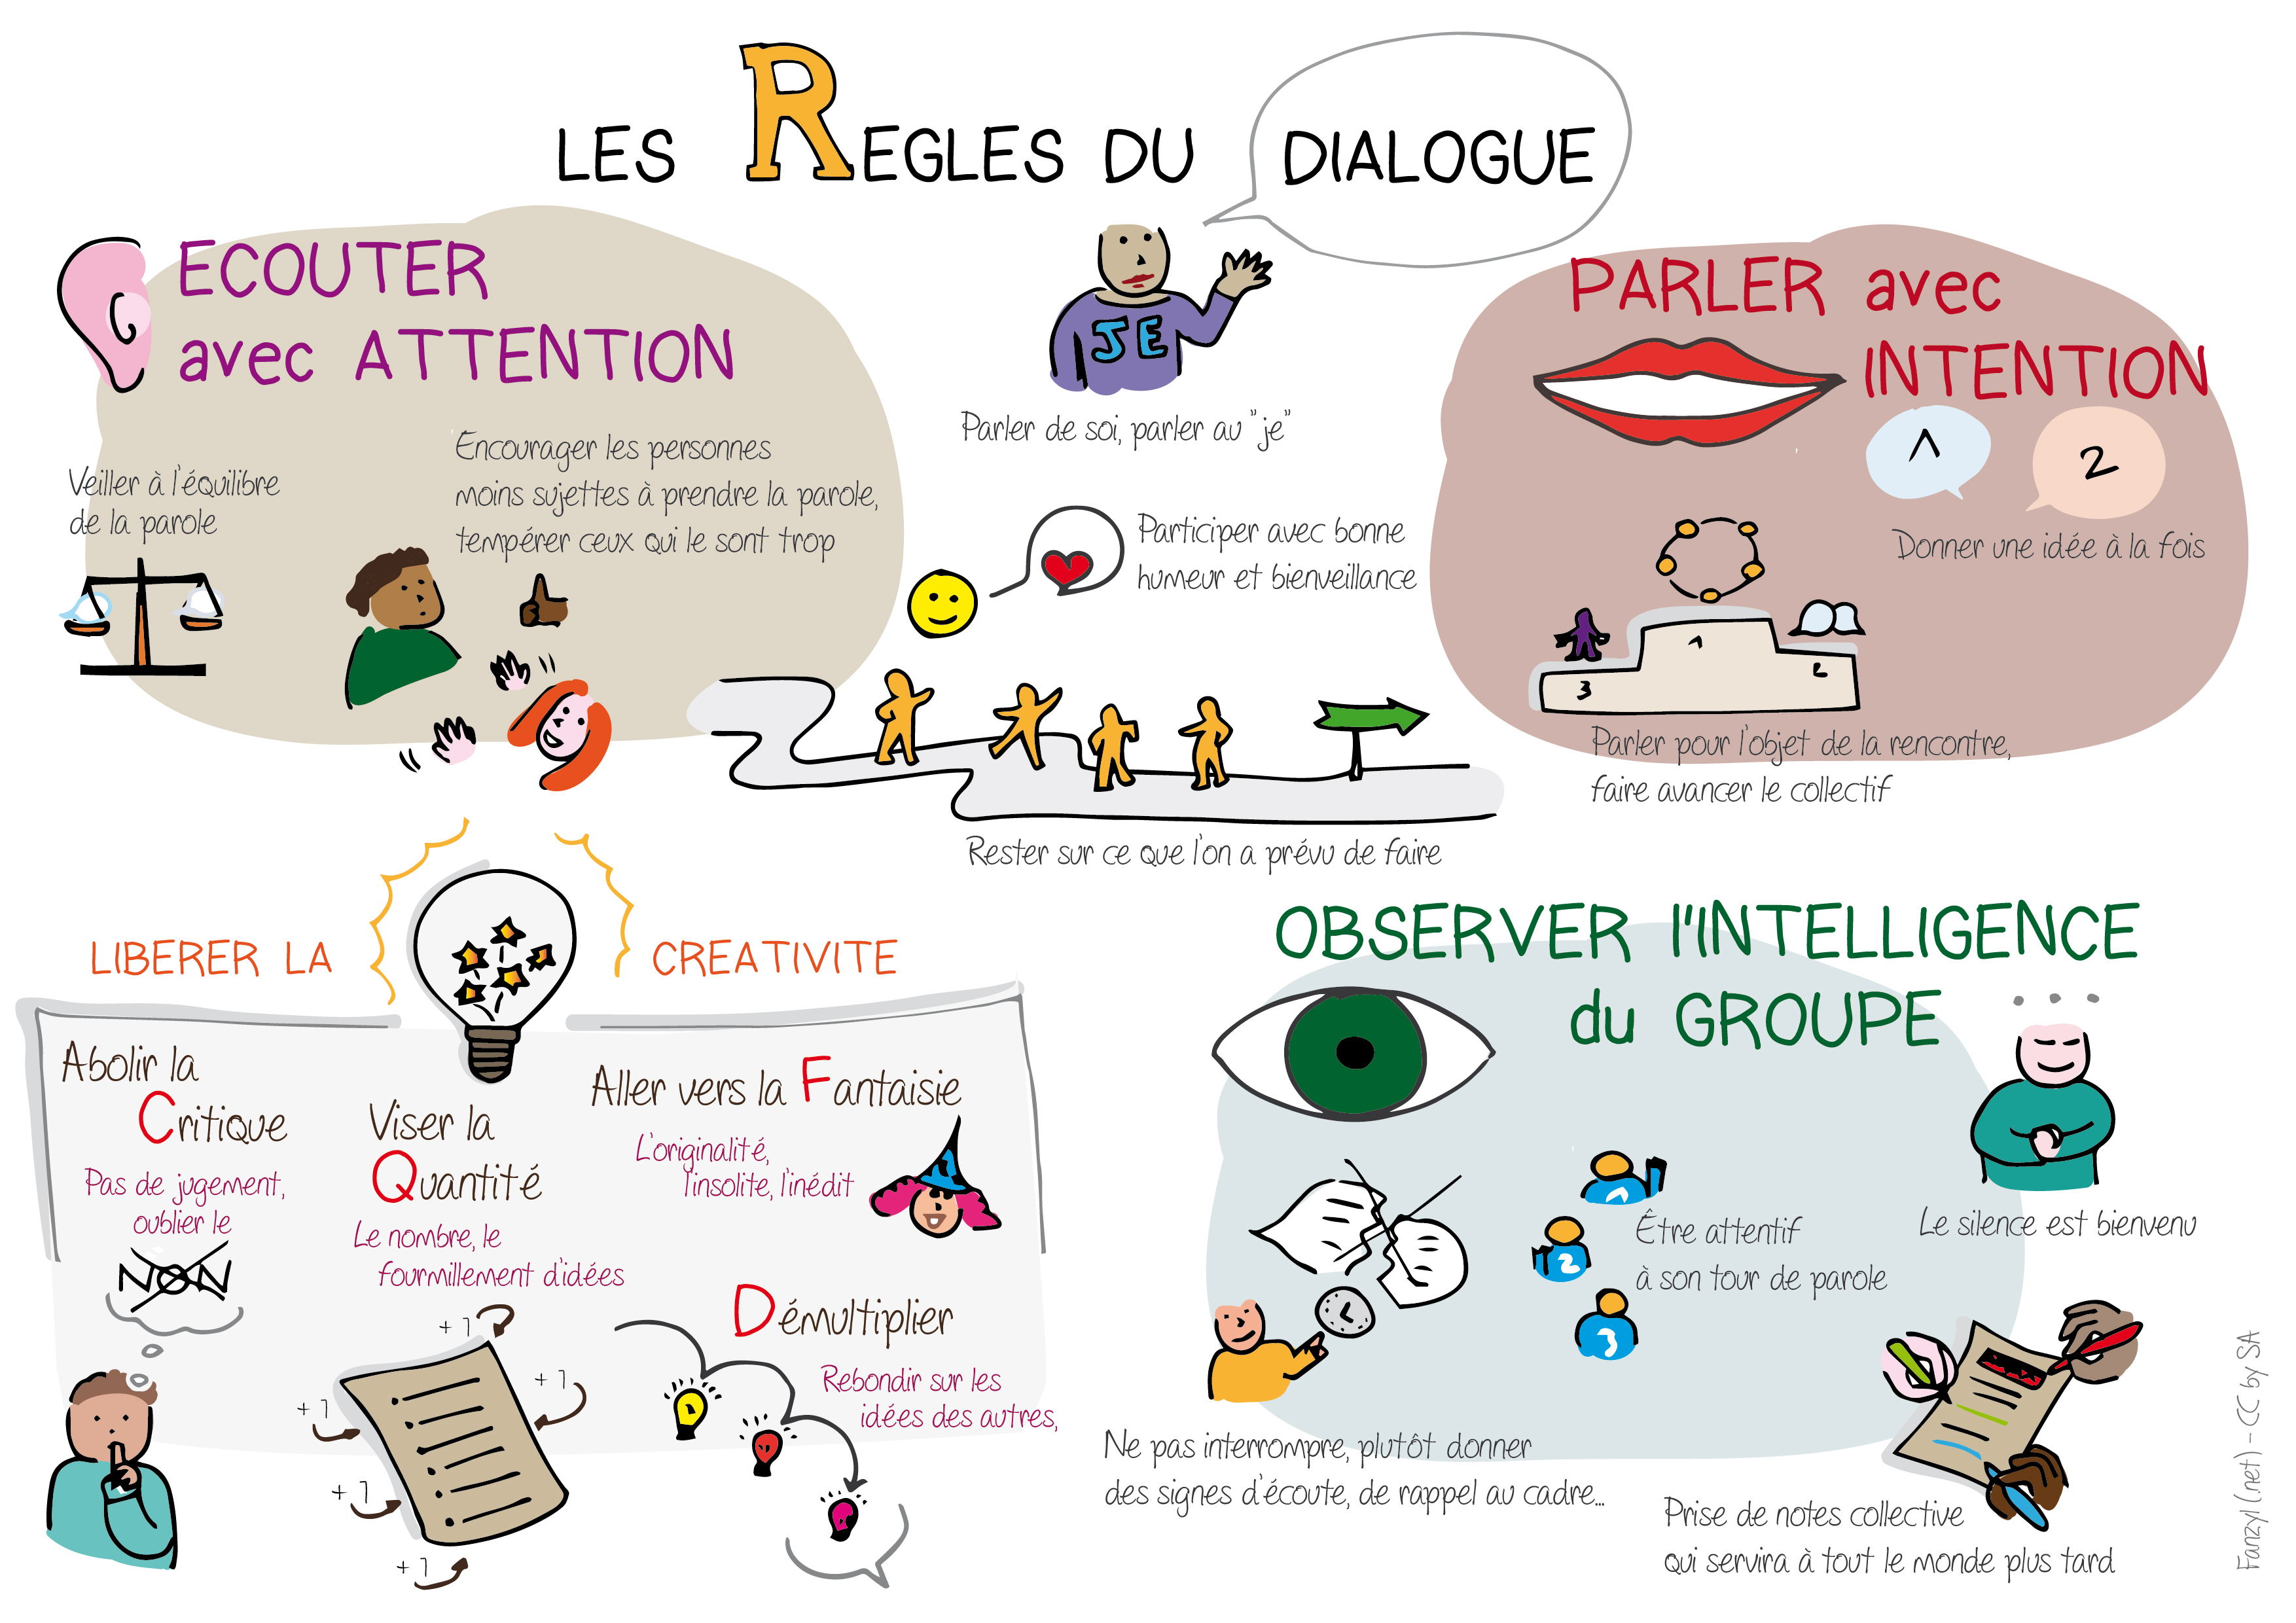 image les_regles_du_dialogue_accord_cadre.jpg (2.0MB)